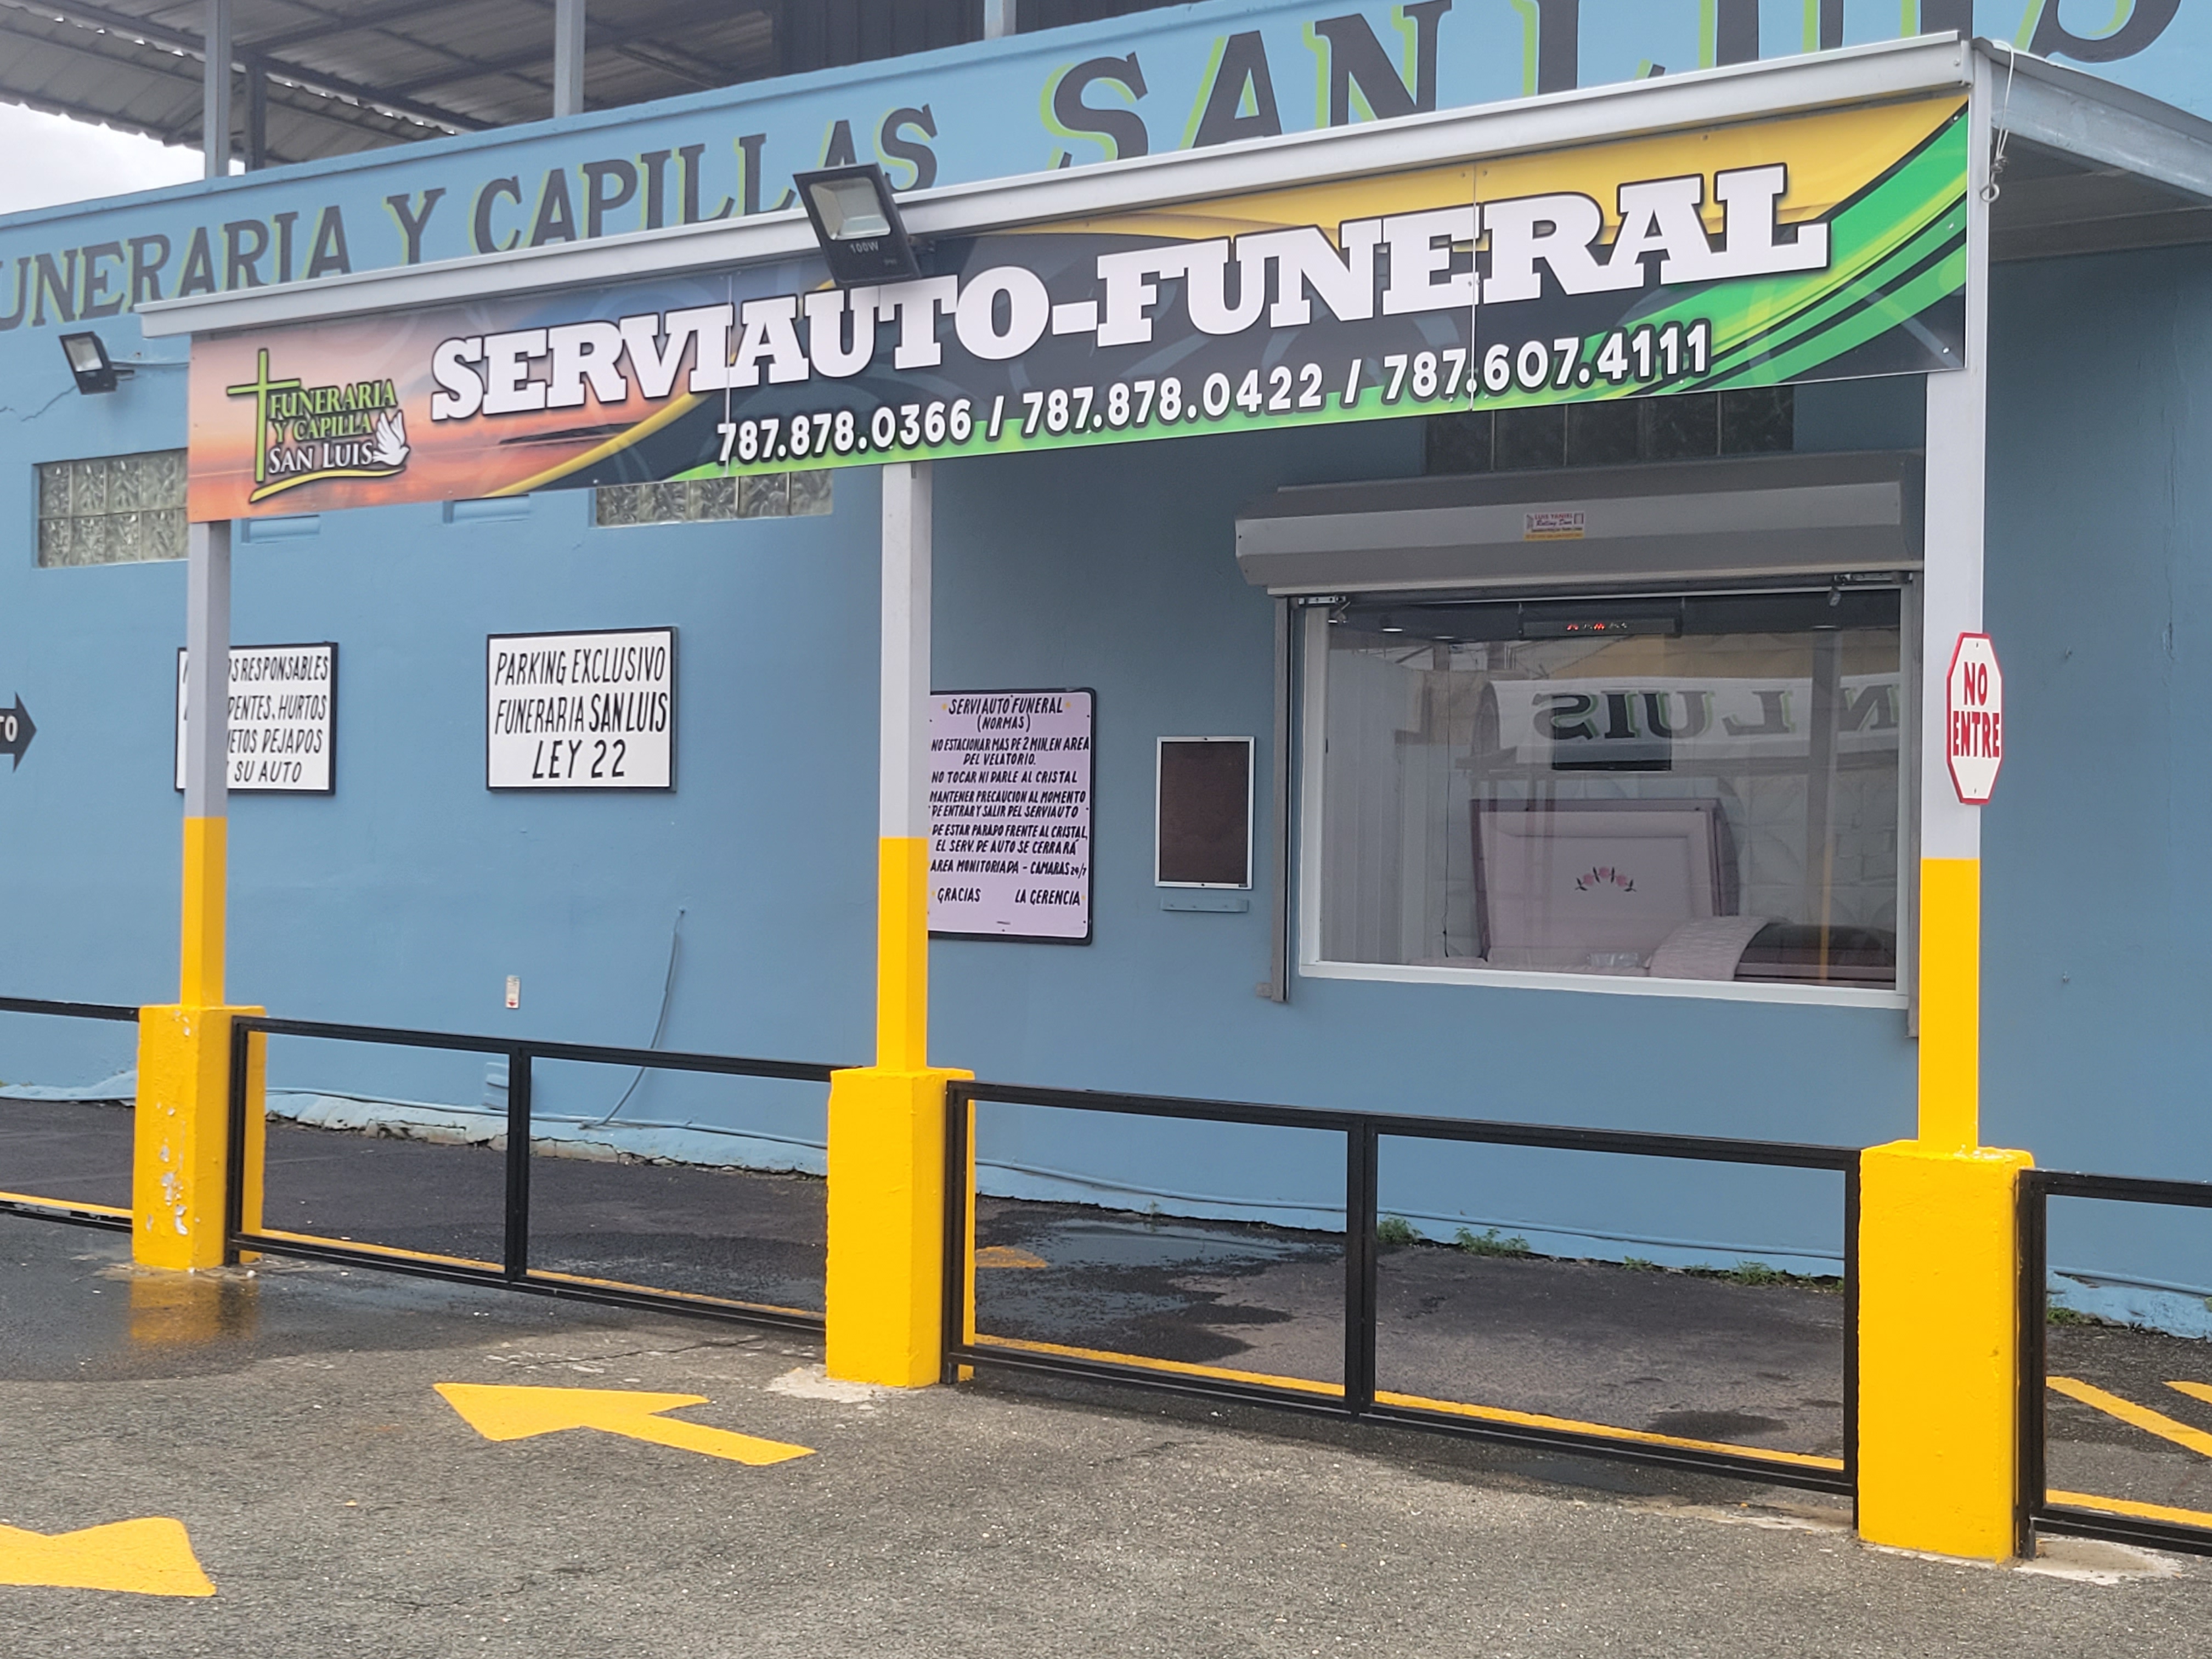 Funeraria y Capilla San Luis - Imagen